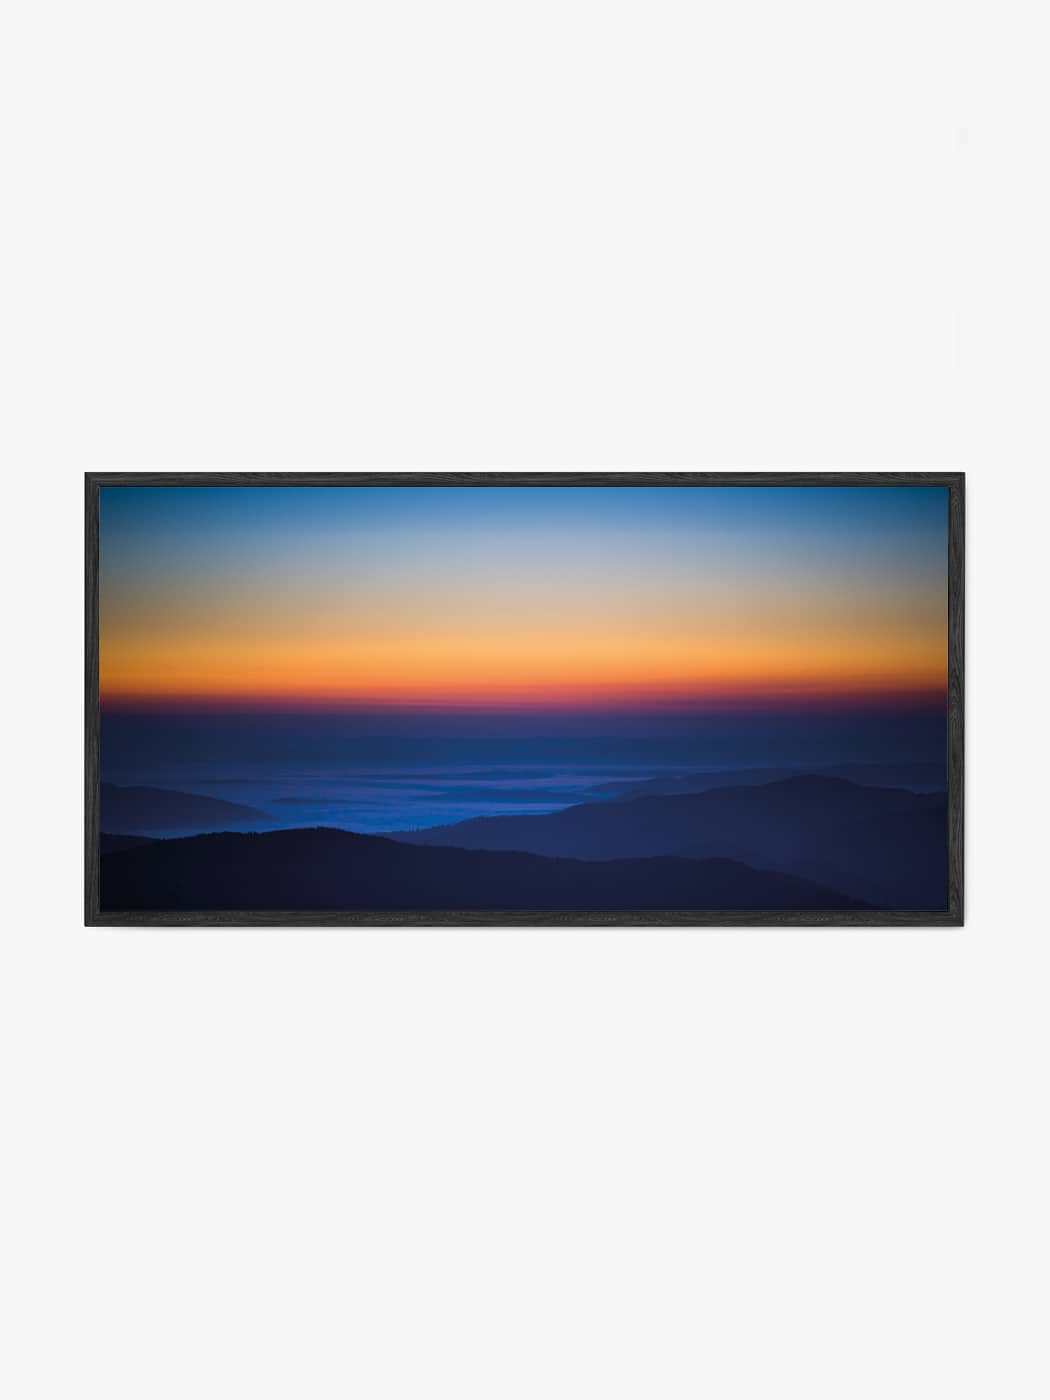 Obraz akustyczny ze zdjęcia - Błękitne wzgórza tuż po zachodzie słońca - Łukasz Popielarczyk